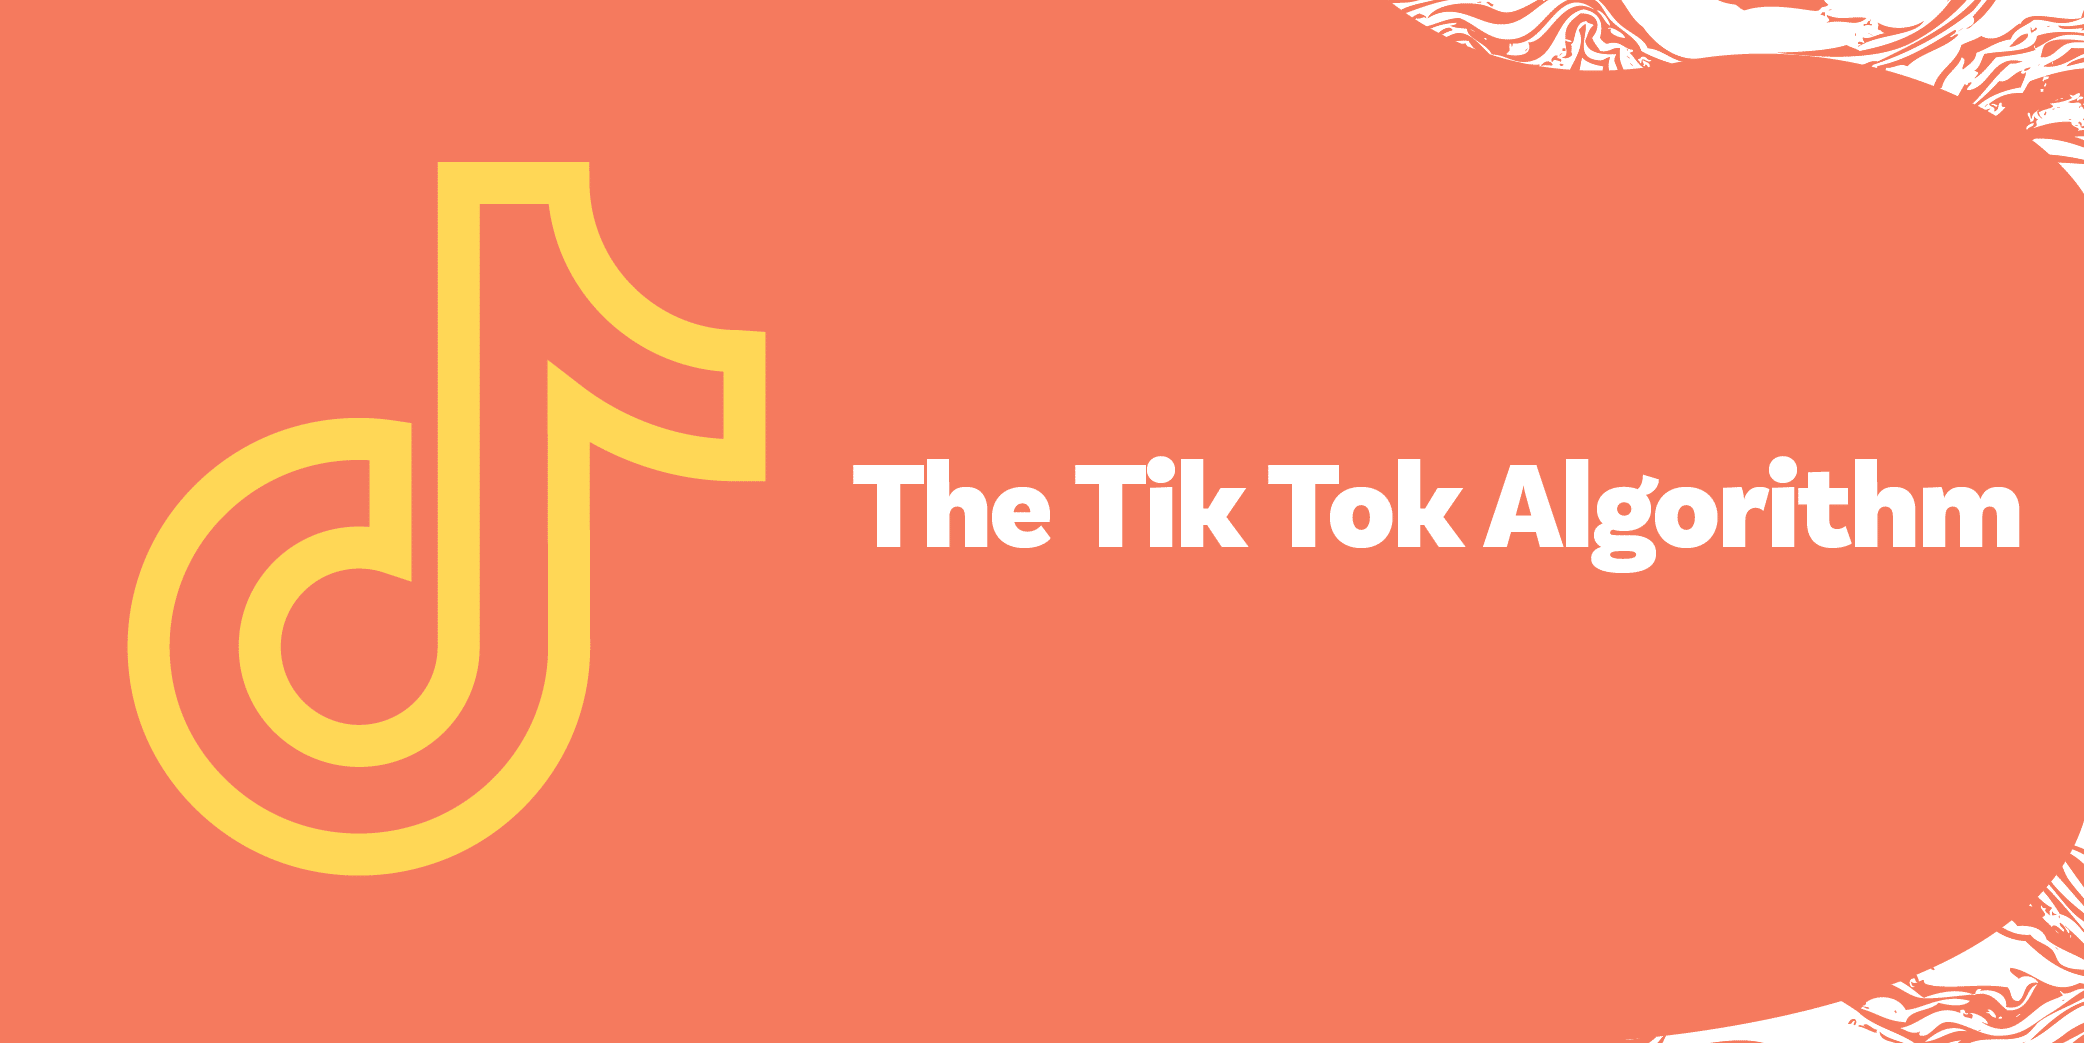 The TikTok Algorithm